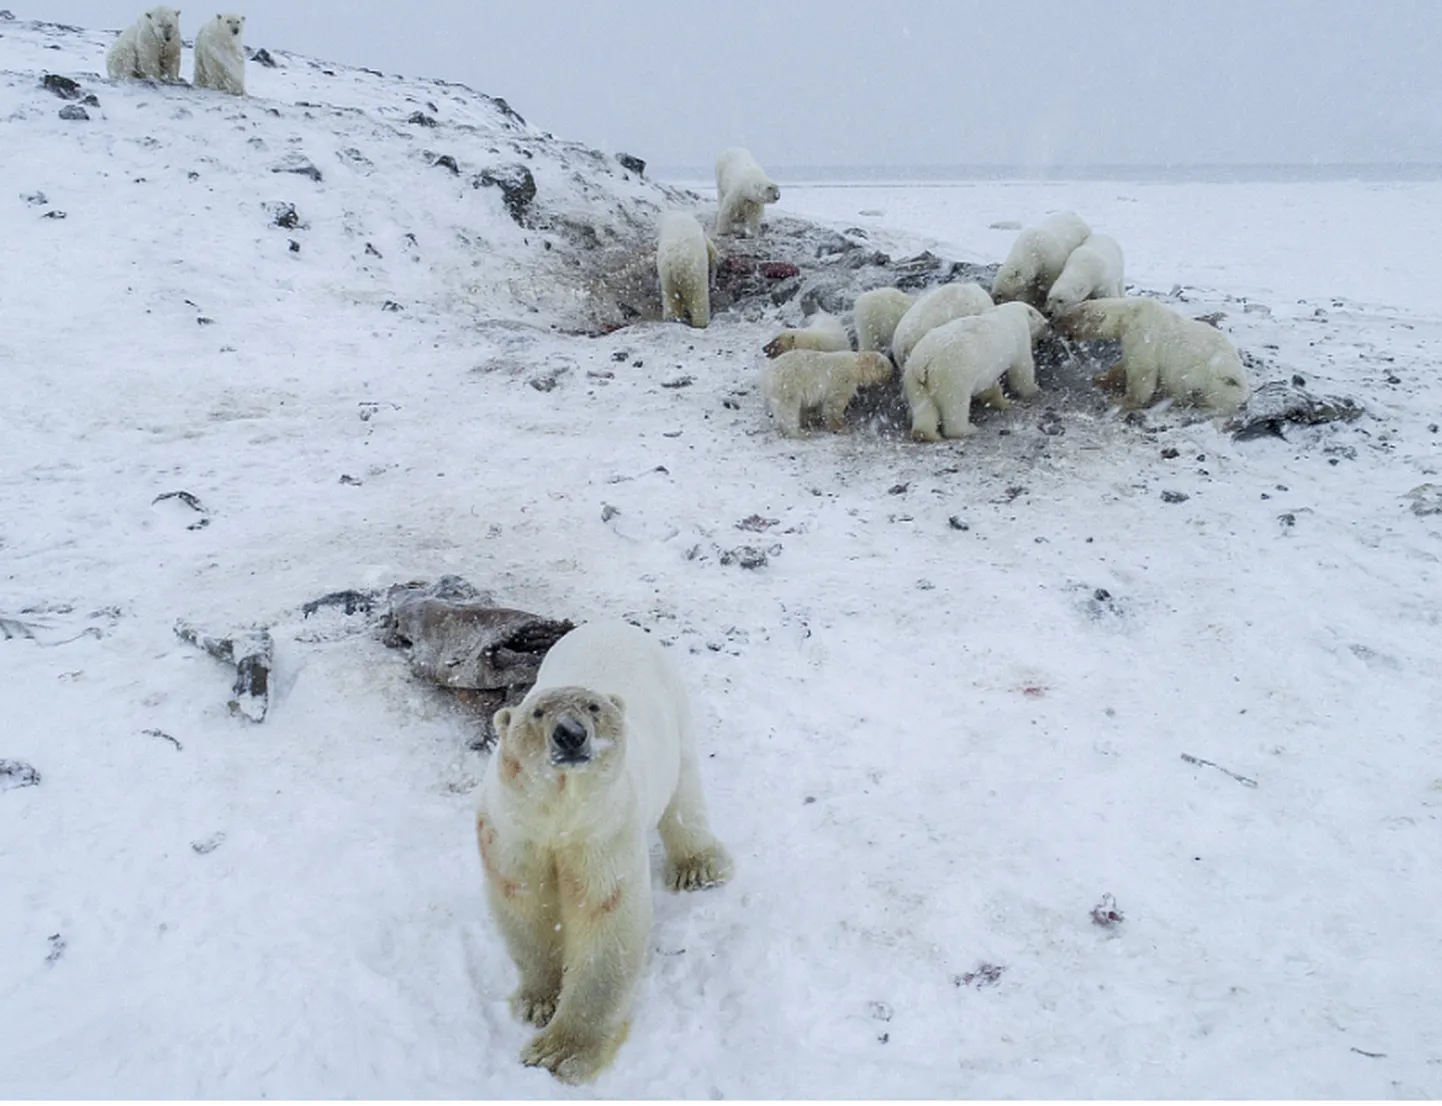 Näljased jääkarud Rõrkaipi külas Tšukotka rajoonis süüa ostimas. Loomad on sunnitud asulatest kõhukinnitust hankima, kuna merejää on liiga õhuke.